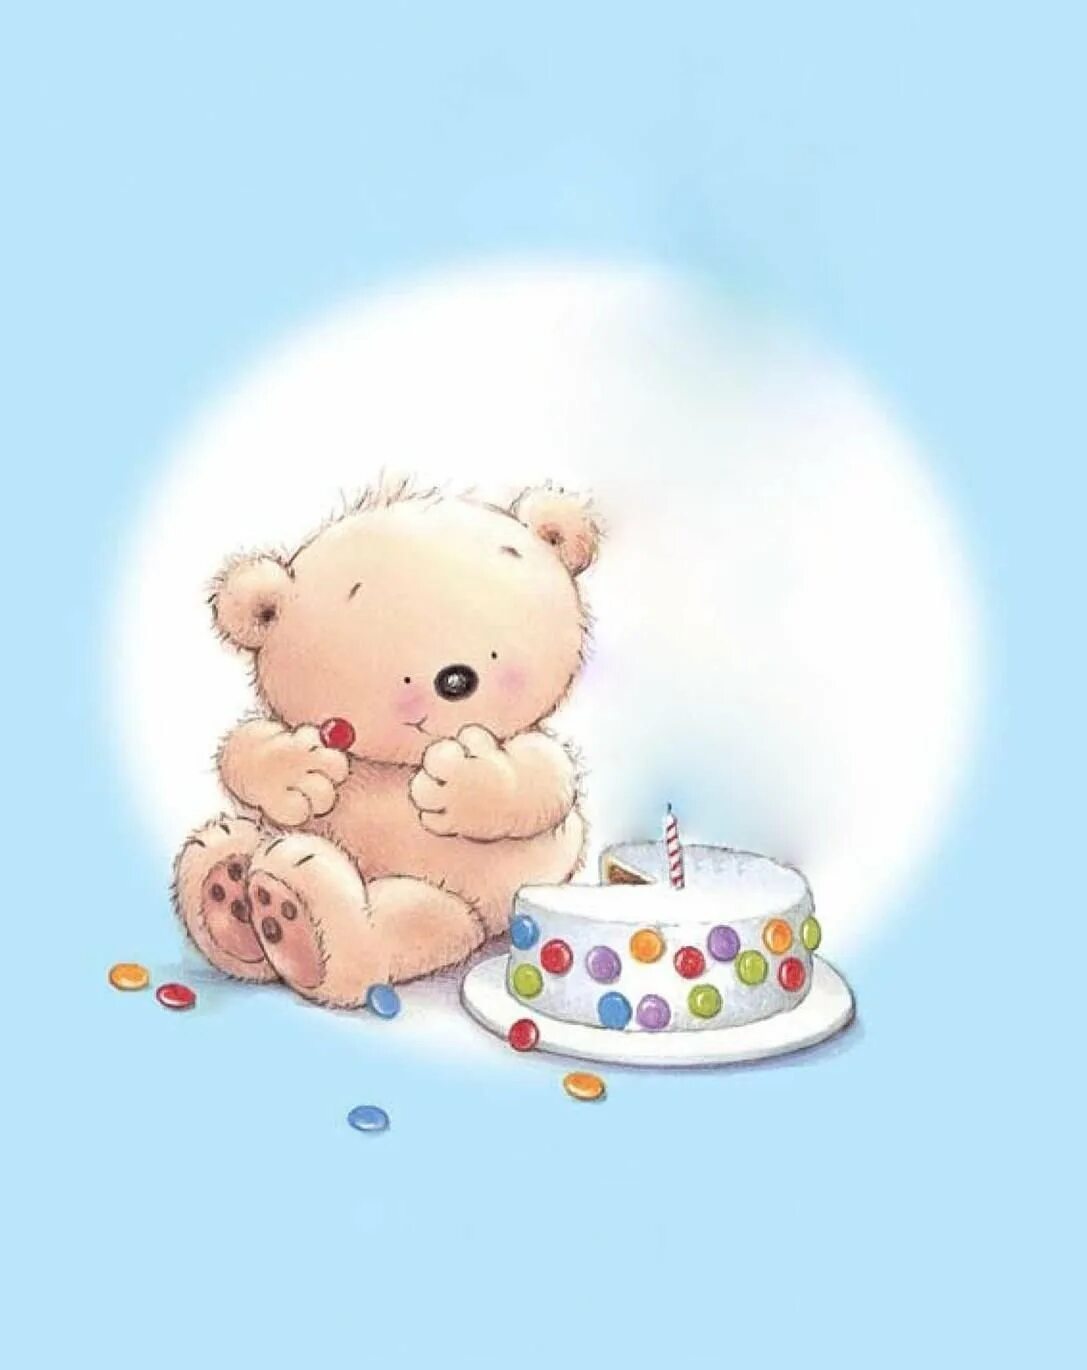 Мишка на день рождения ребенку. Милая открытка с днем рождения. Медвежонок с тортиком. Милые иллюстрации с днем рождения. Детские открытки с мишками.